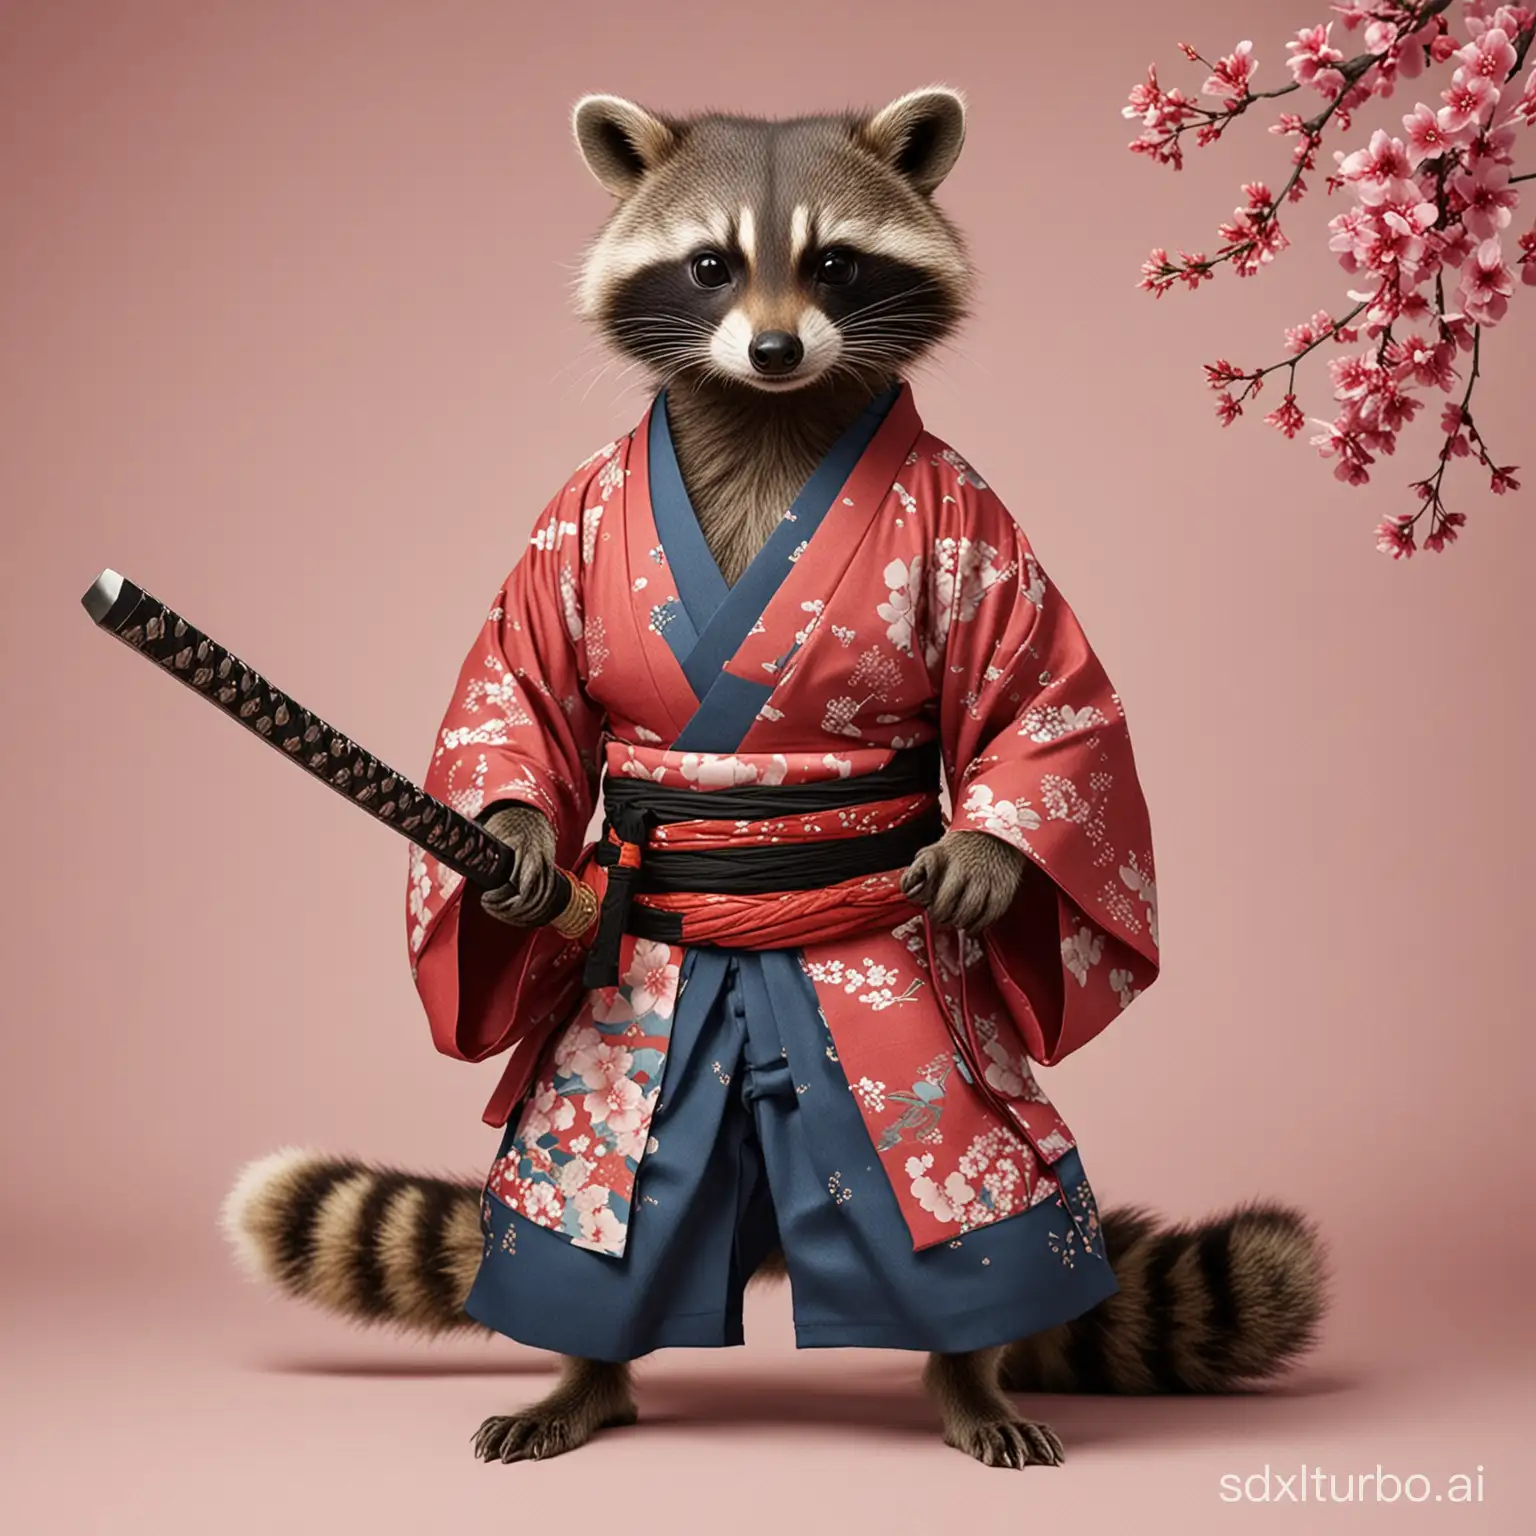 A raccoon with a katana in a kimono